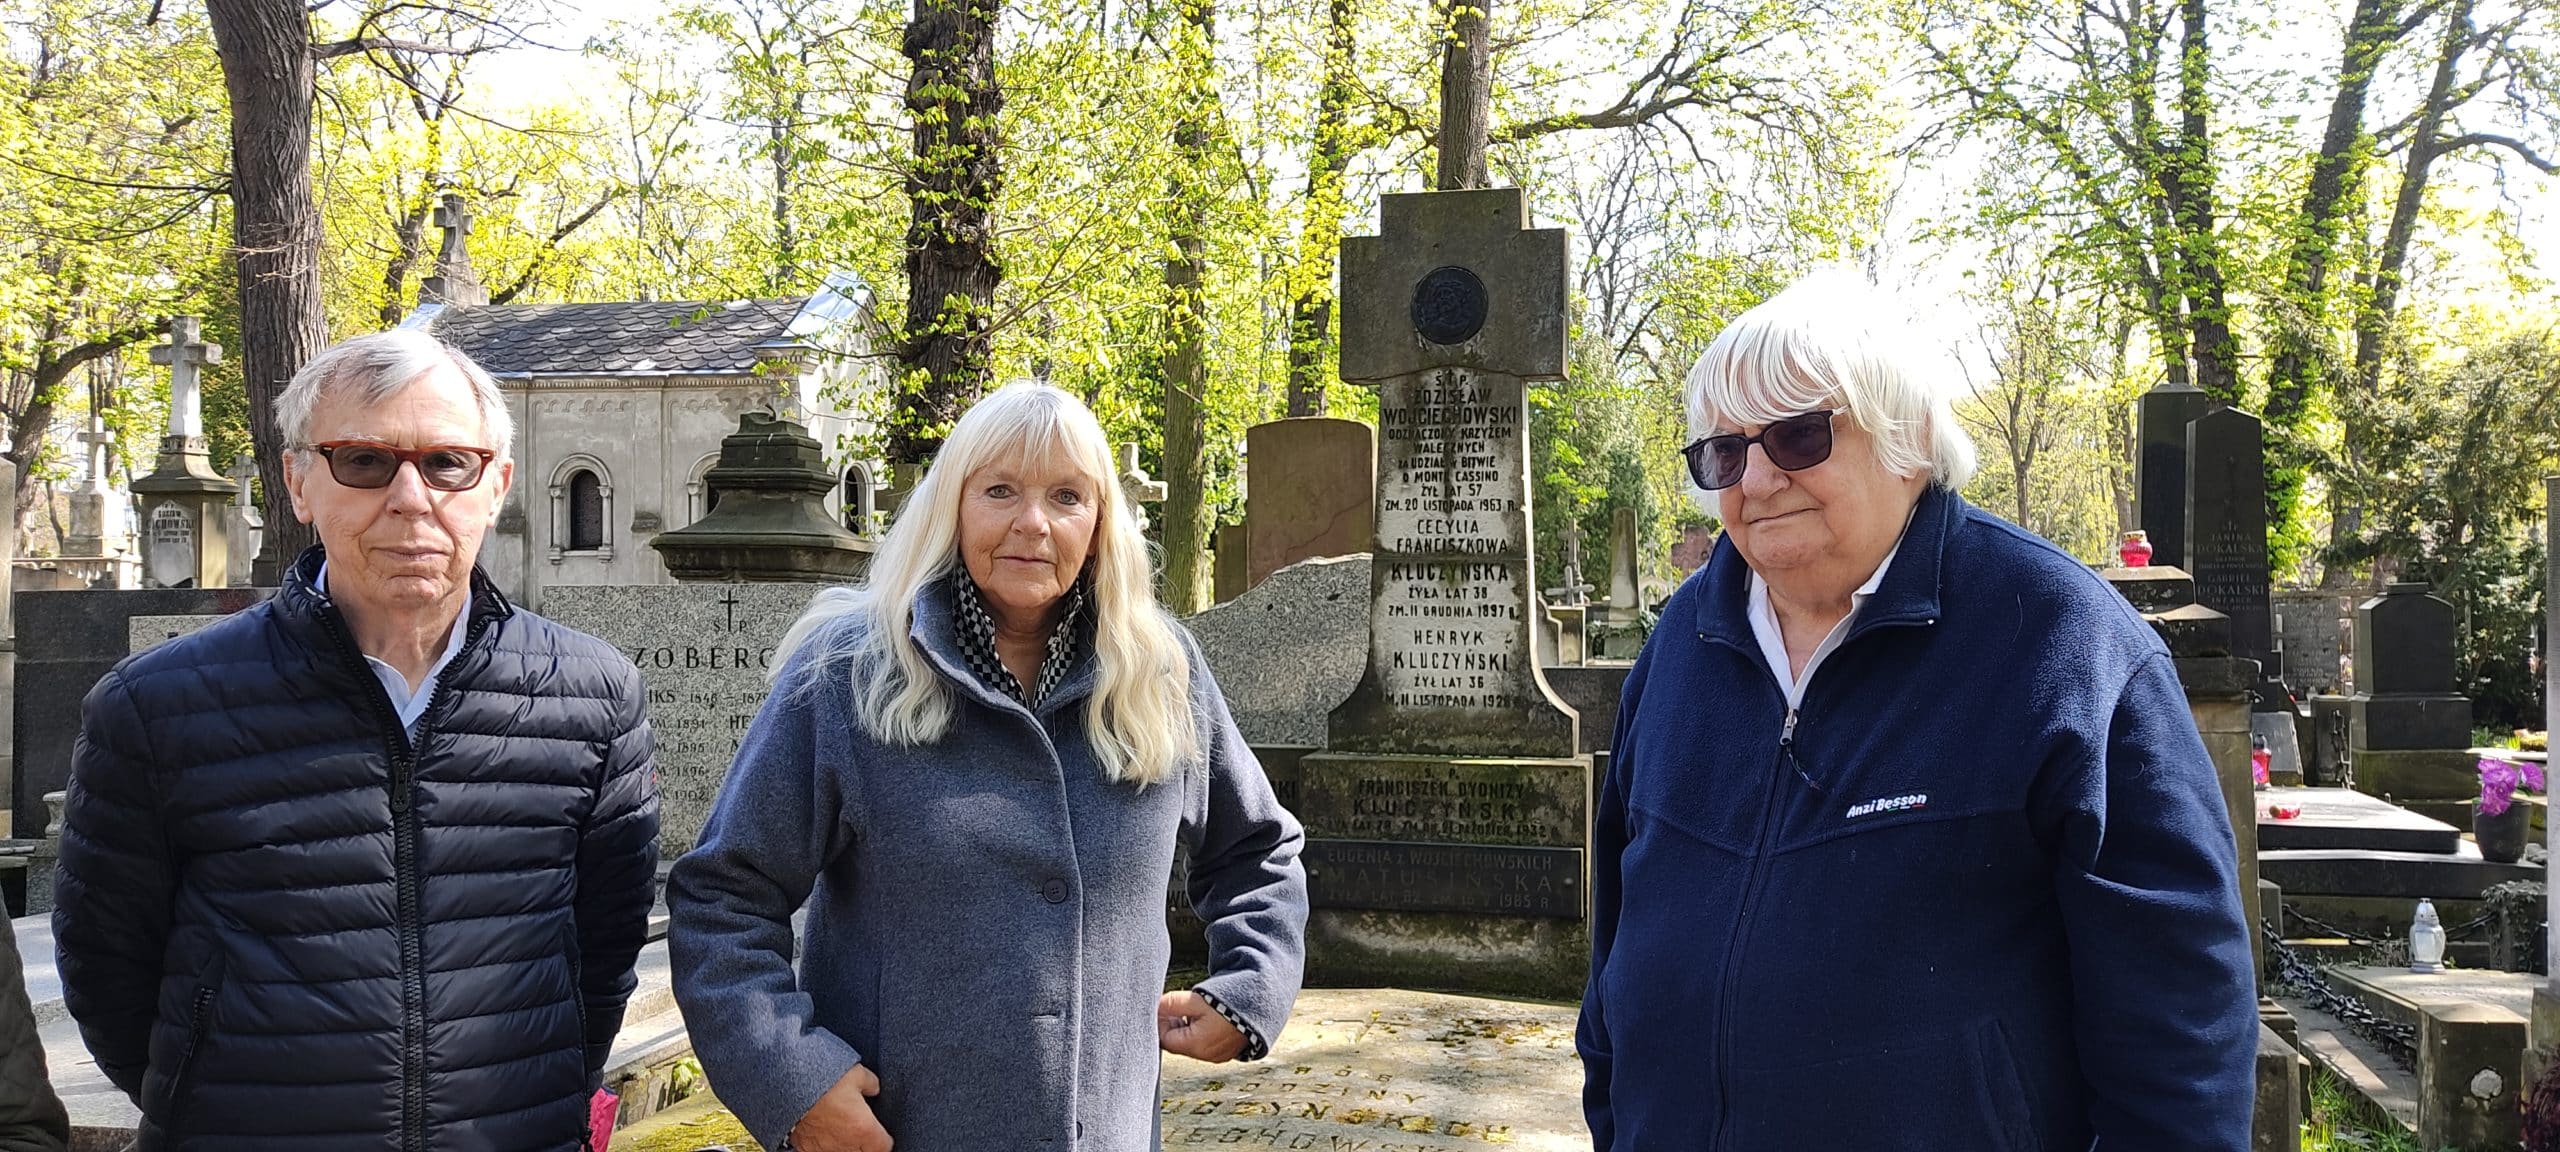 ג'ובאני, רנטה וקריסטוף, אחרי שהתאחדו לראשונה ליד הקבר של אביהם במאי 2022